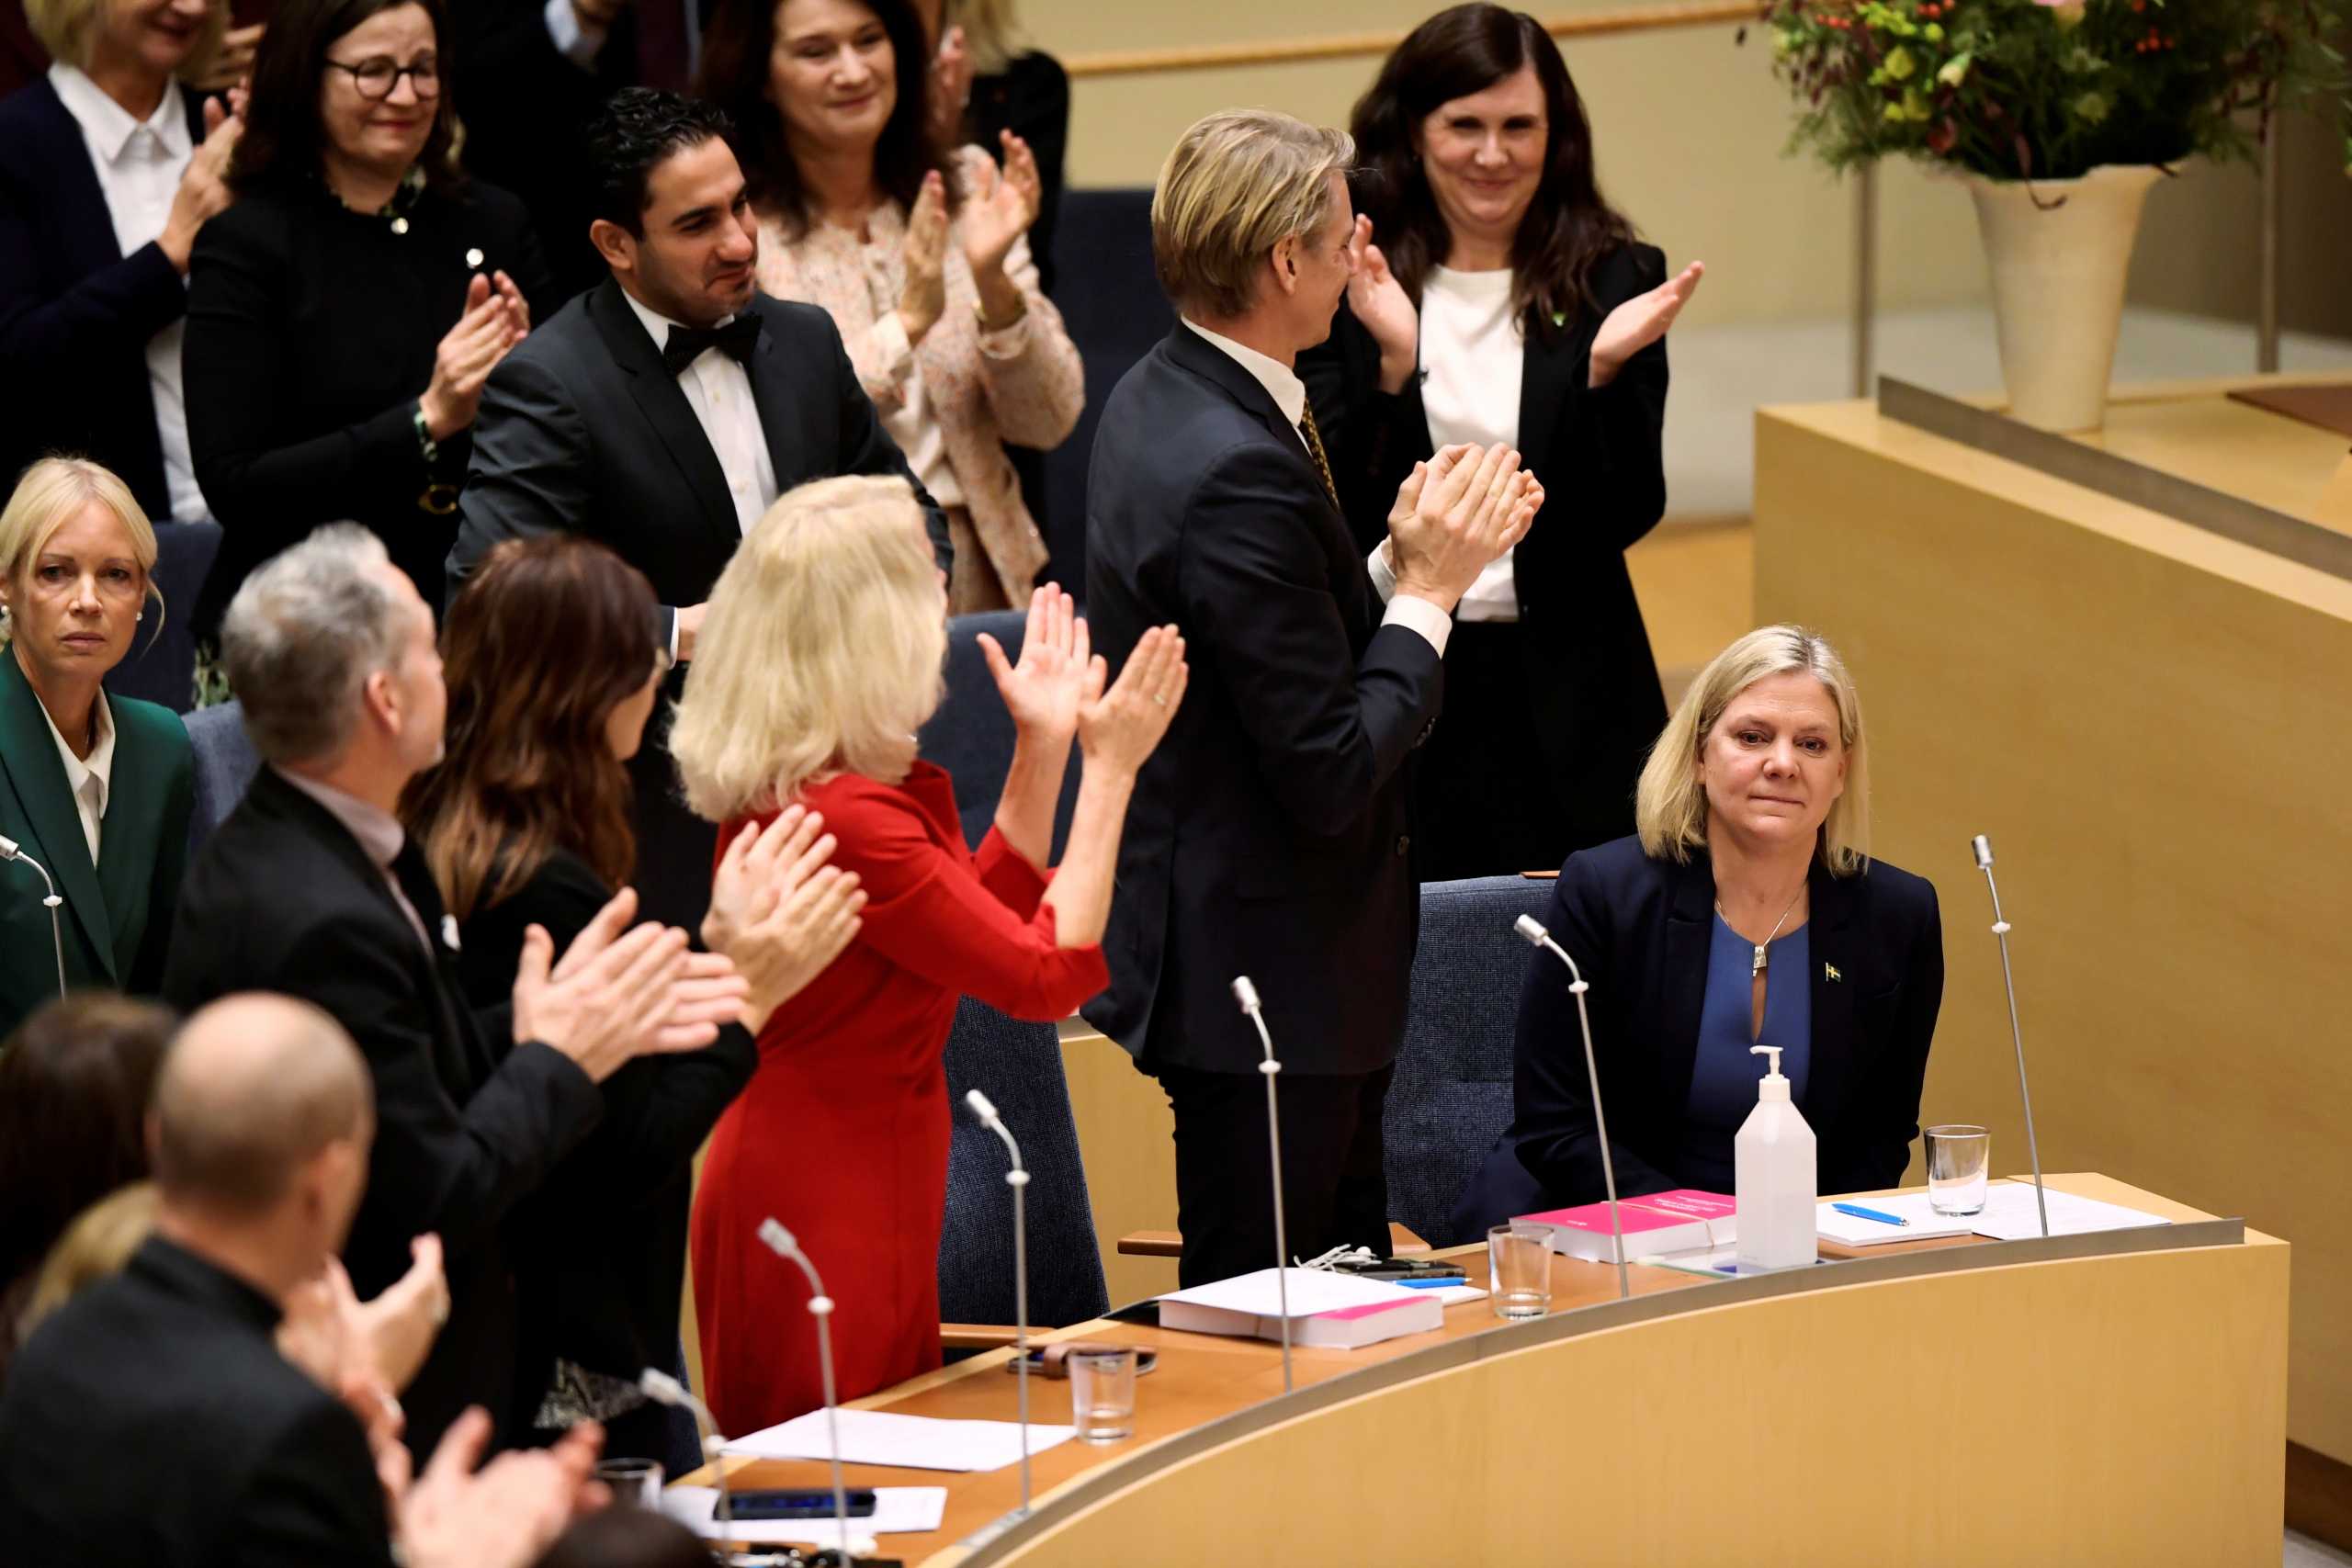 Σουηδία: Το μετάνιωσε η πρωθυπουργός των 8 ωρών Μαγκνταλένα Άντερσον – Ζητά πάλι ψήφο εμπιστοσύνης